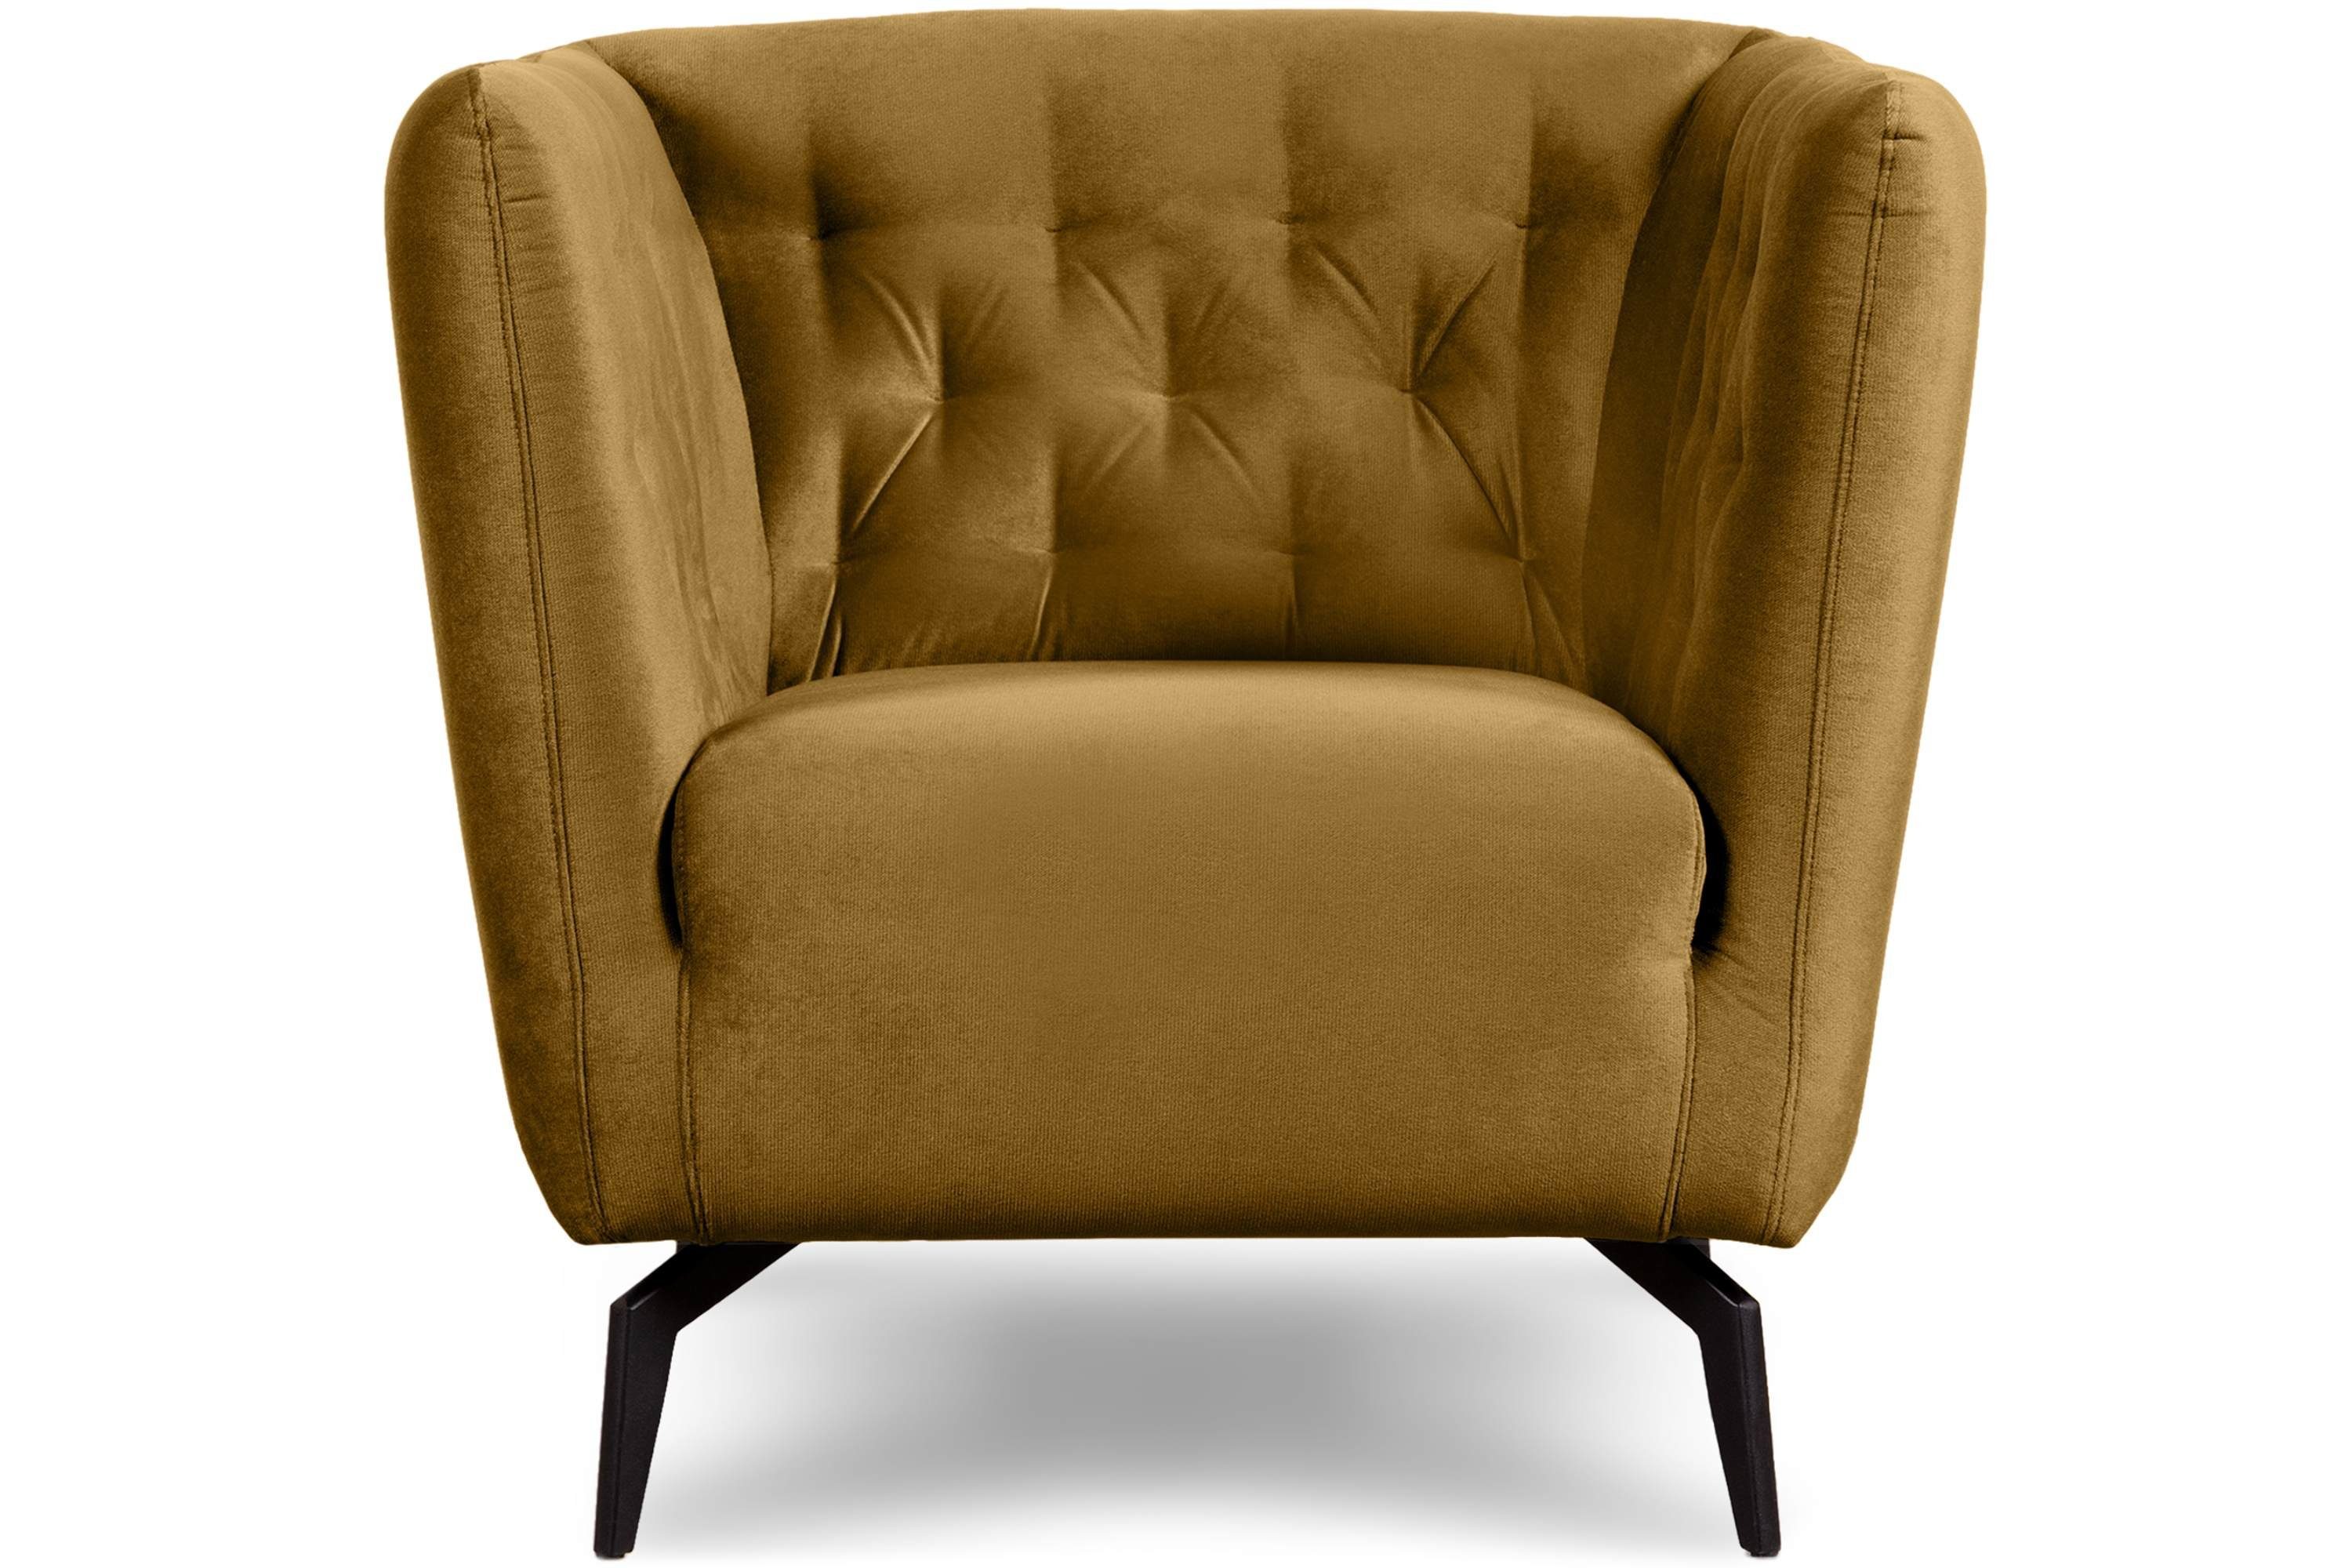 Feder im hohen | CORDI gewellte Metallfüßen, und honigfarben auf Sessel Sessel, Schaumstoff honigfarben Sitz Konsimo Gesteppter